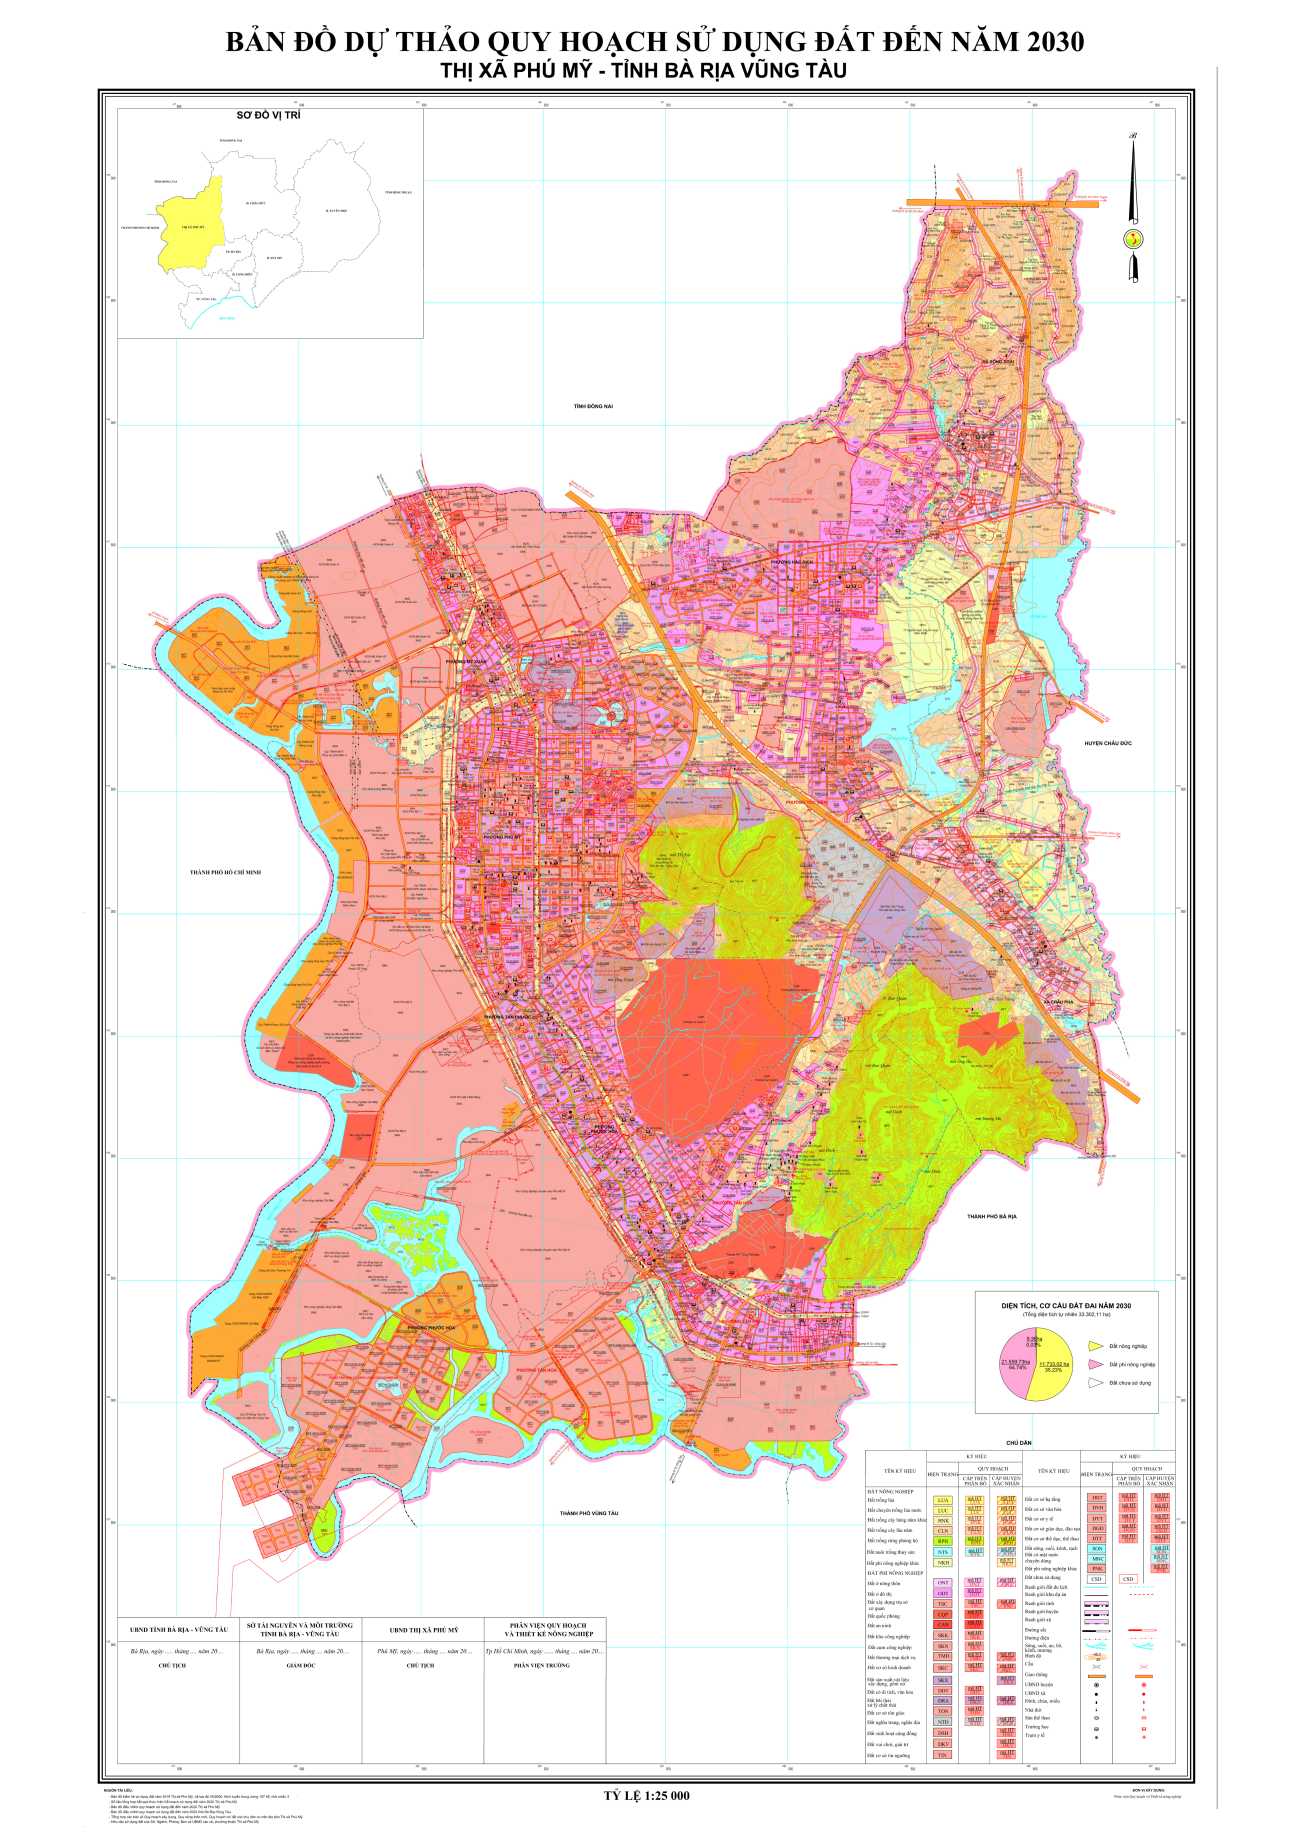 Bản đồ sử dụng đất thị xã Phú Mỹ tỉnh Bà Rịa Vũng Tàu